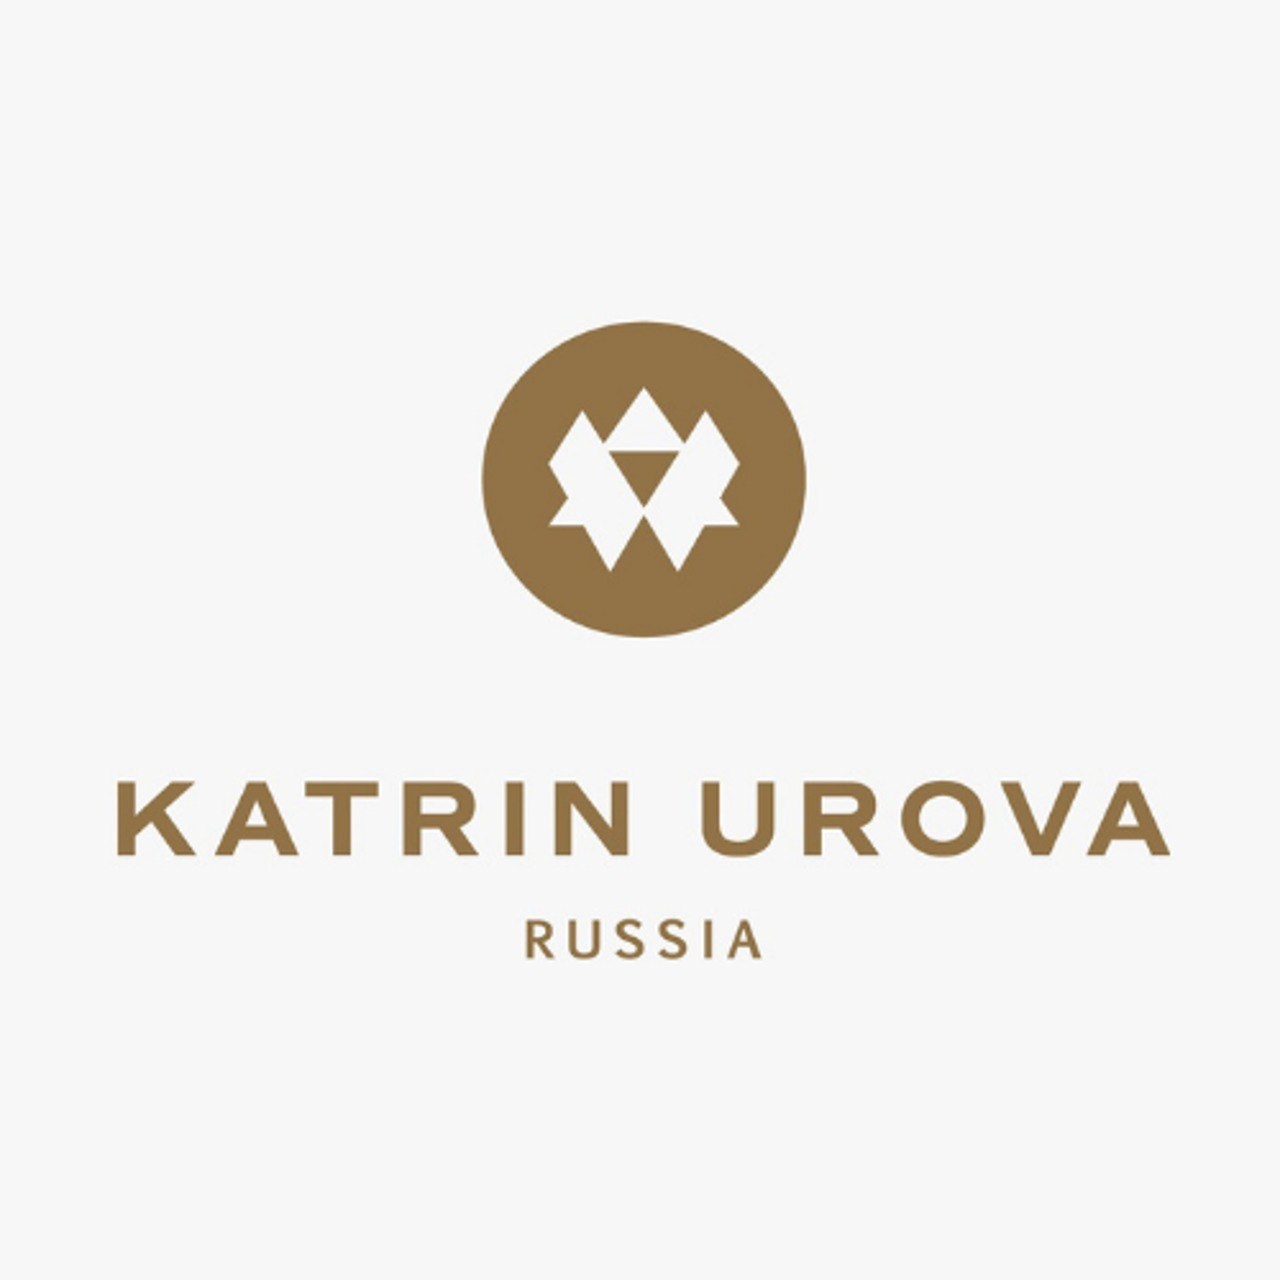 Katrin Urova